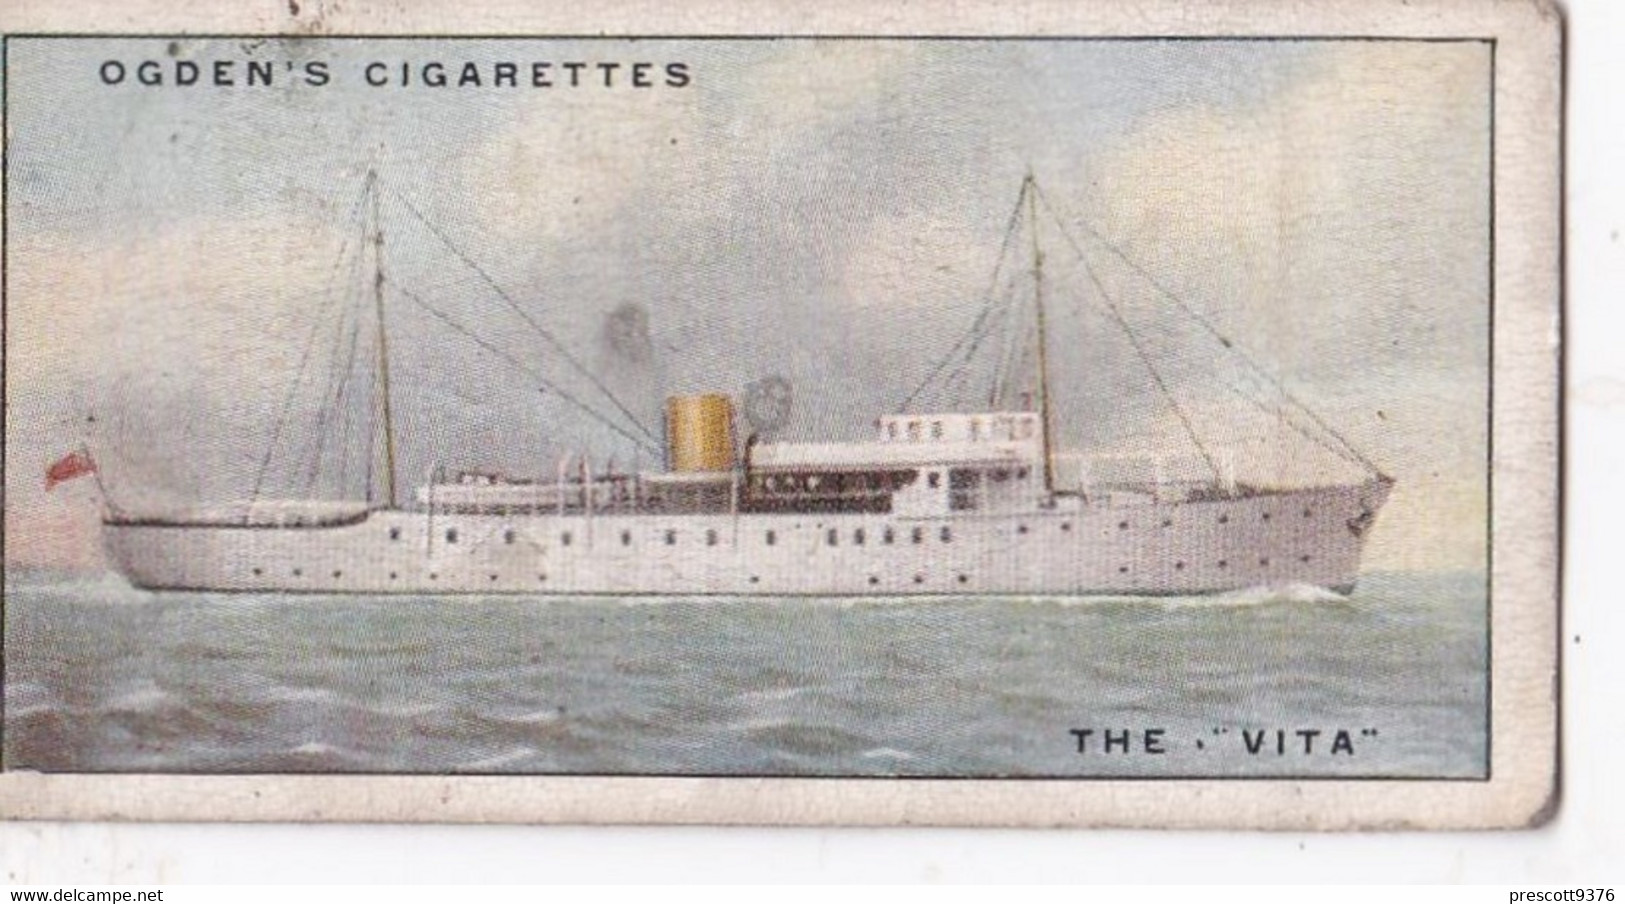 Yachts & Motor Boats 1931 - 48 The Vita  - Ogdens  Cigarette Card - Original  - Ships - Sealife - Ogden's